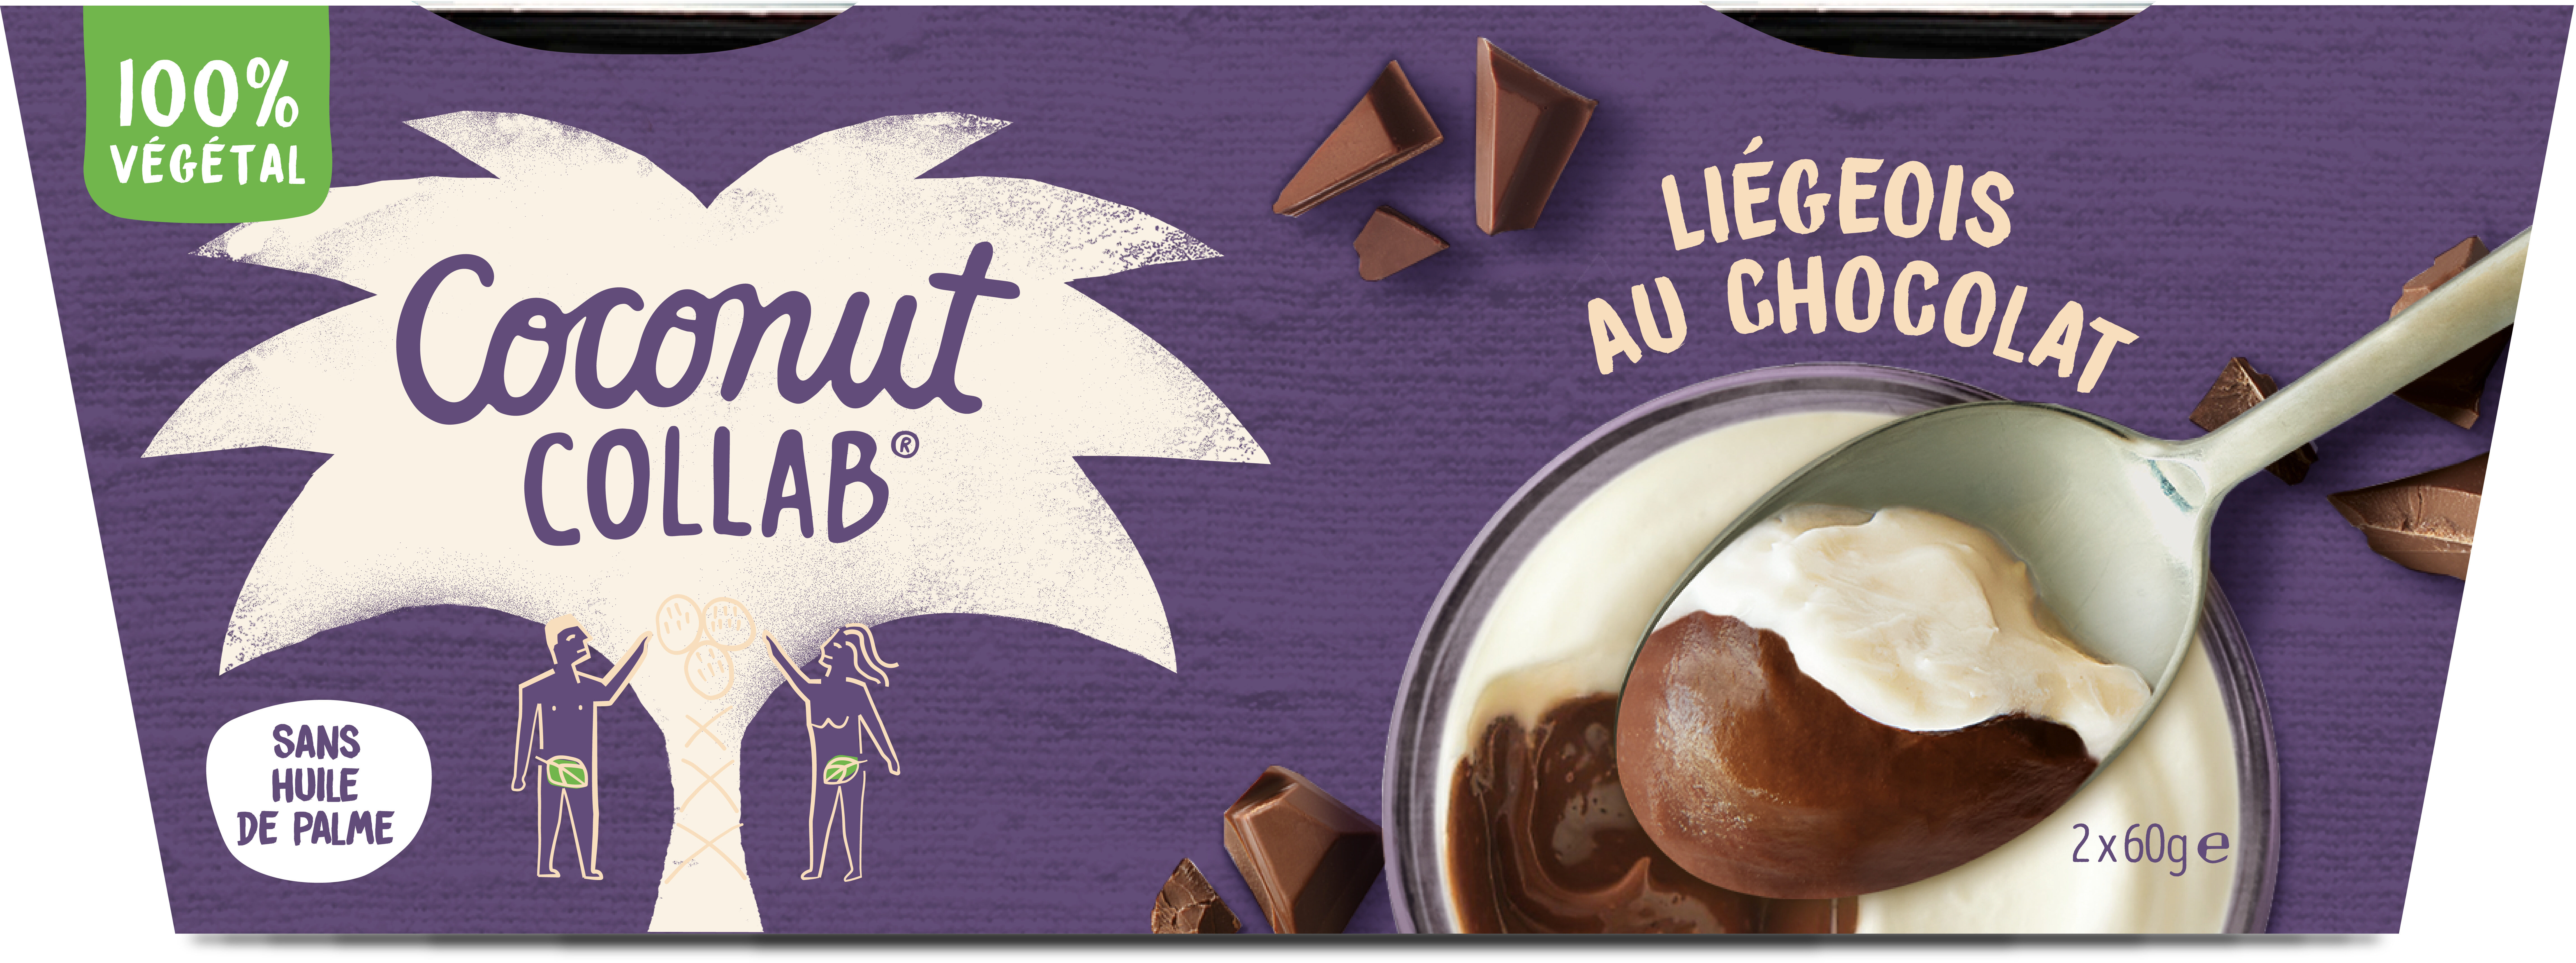 Liégeois au chocolat 2x60g - Prodotto - fr